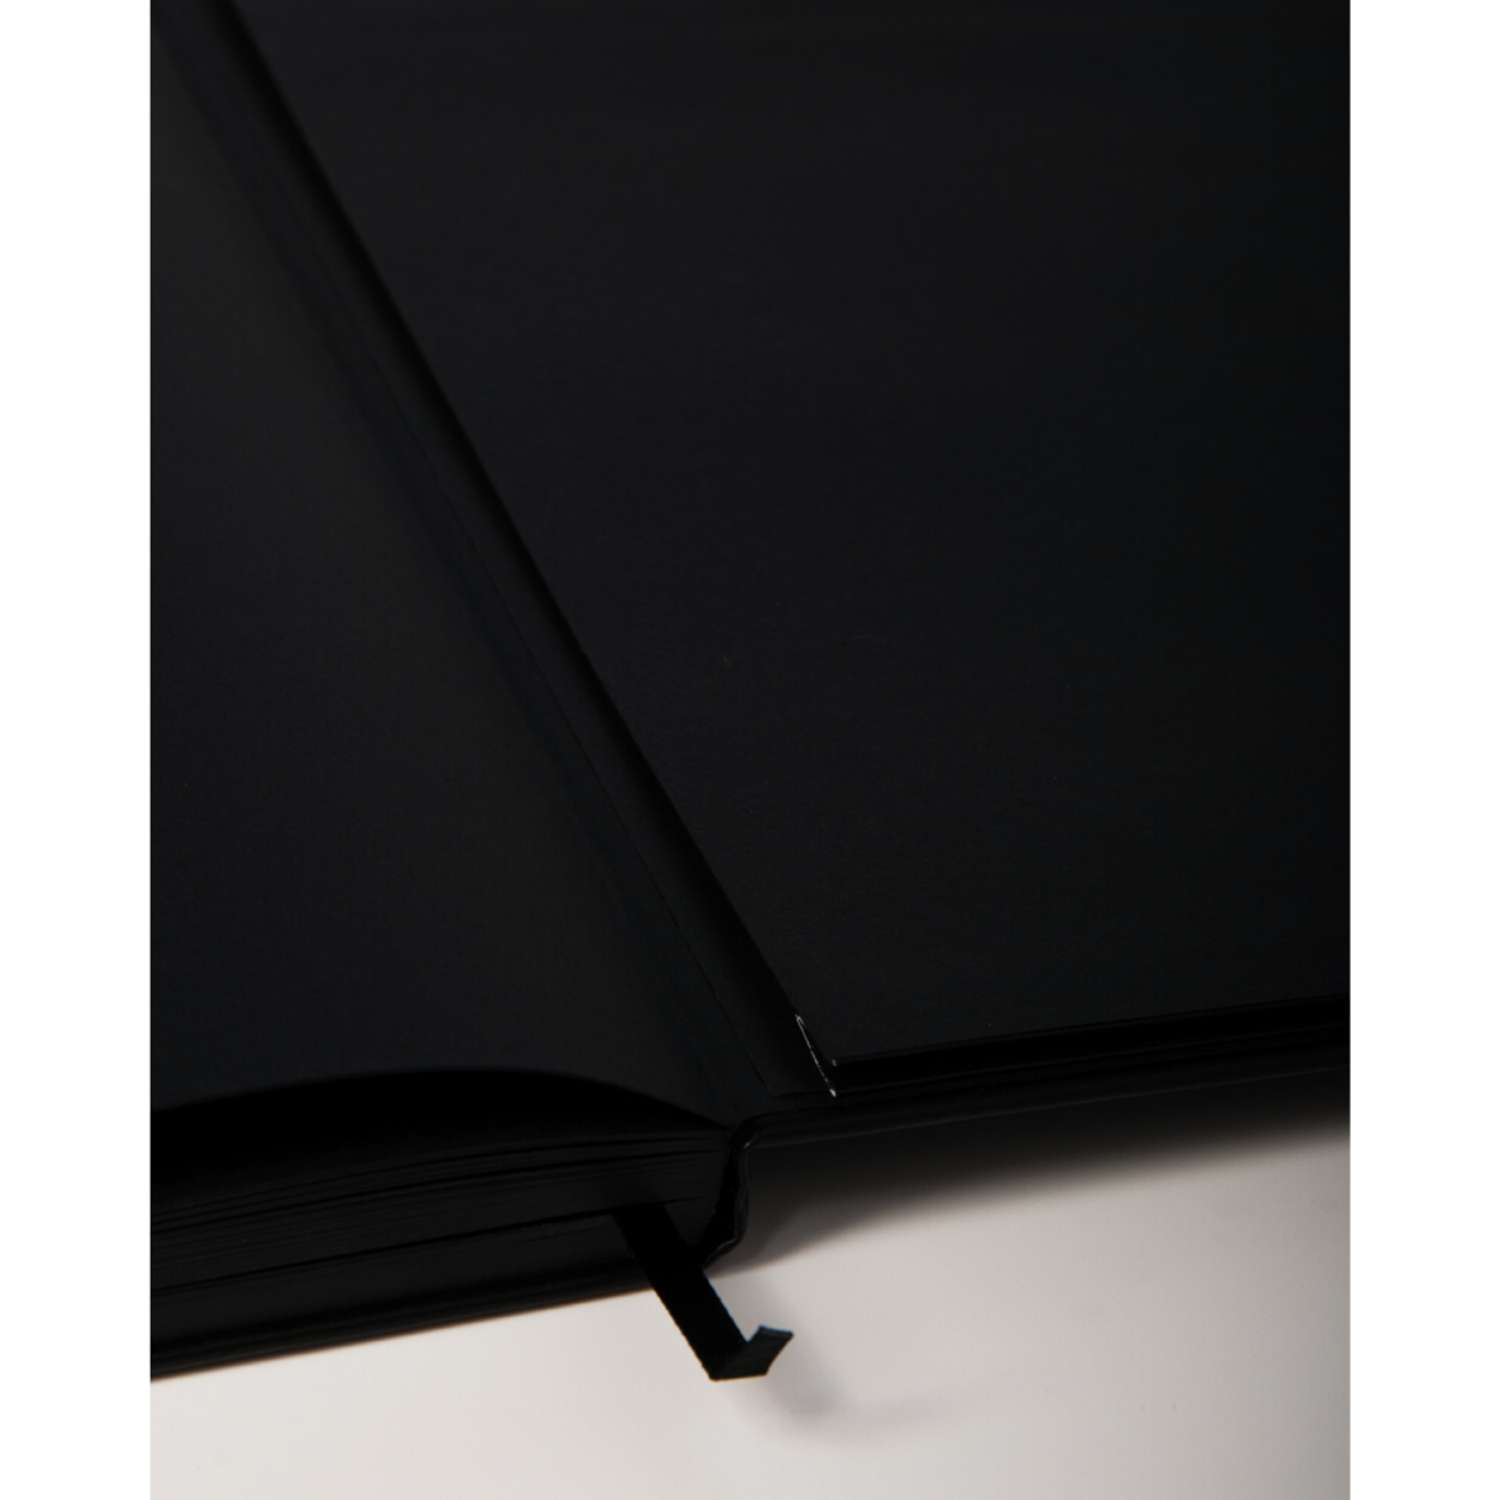 Скетчбук Sakura 140 г/кв.м 12х12 см 80 листов черного цвета Твердая черная обложка - фото 6